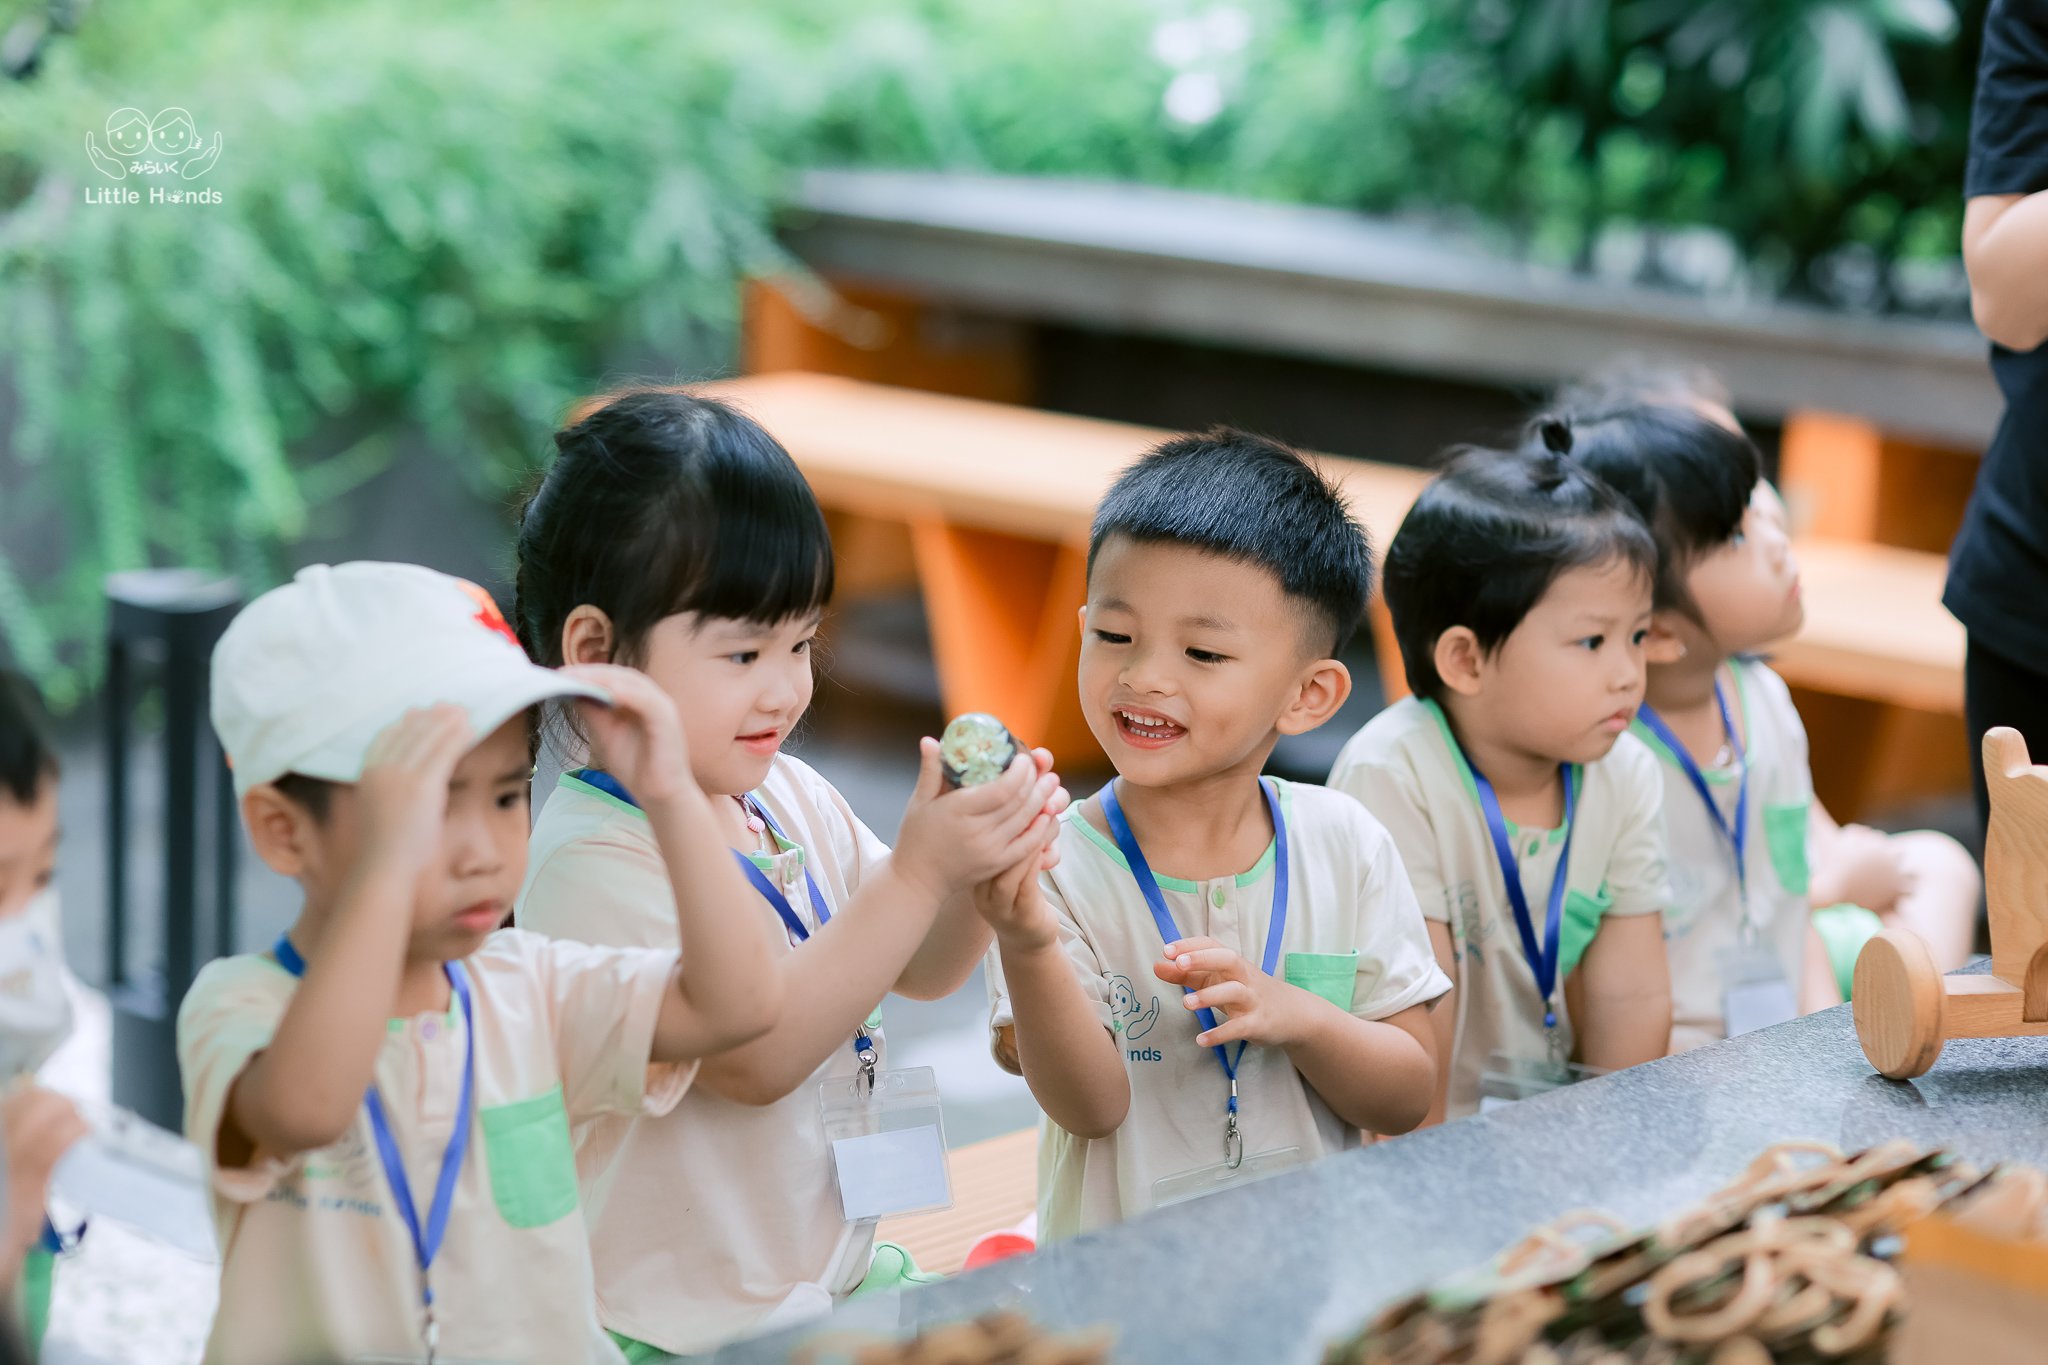 幼稚園「みらいくリトルハンズ」 日本人向けの子育て講演会